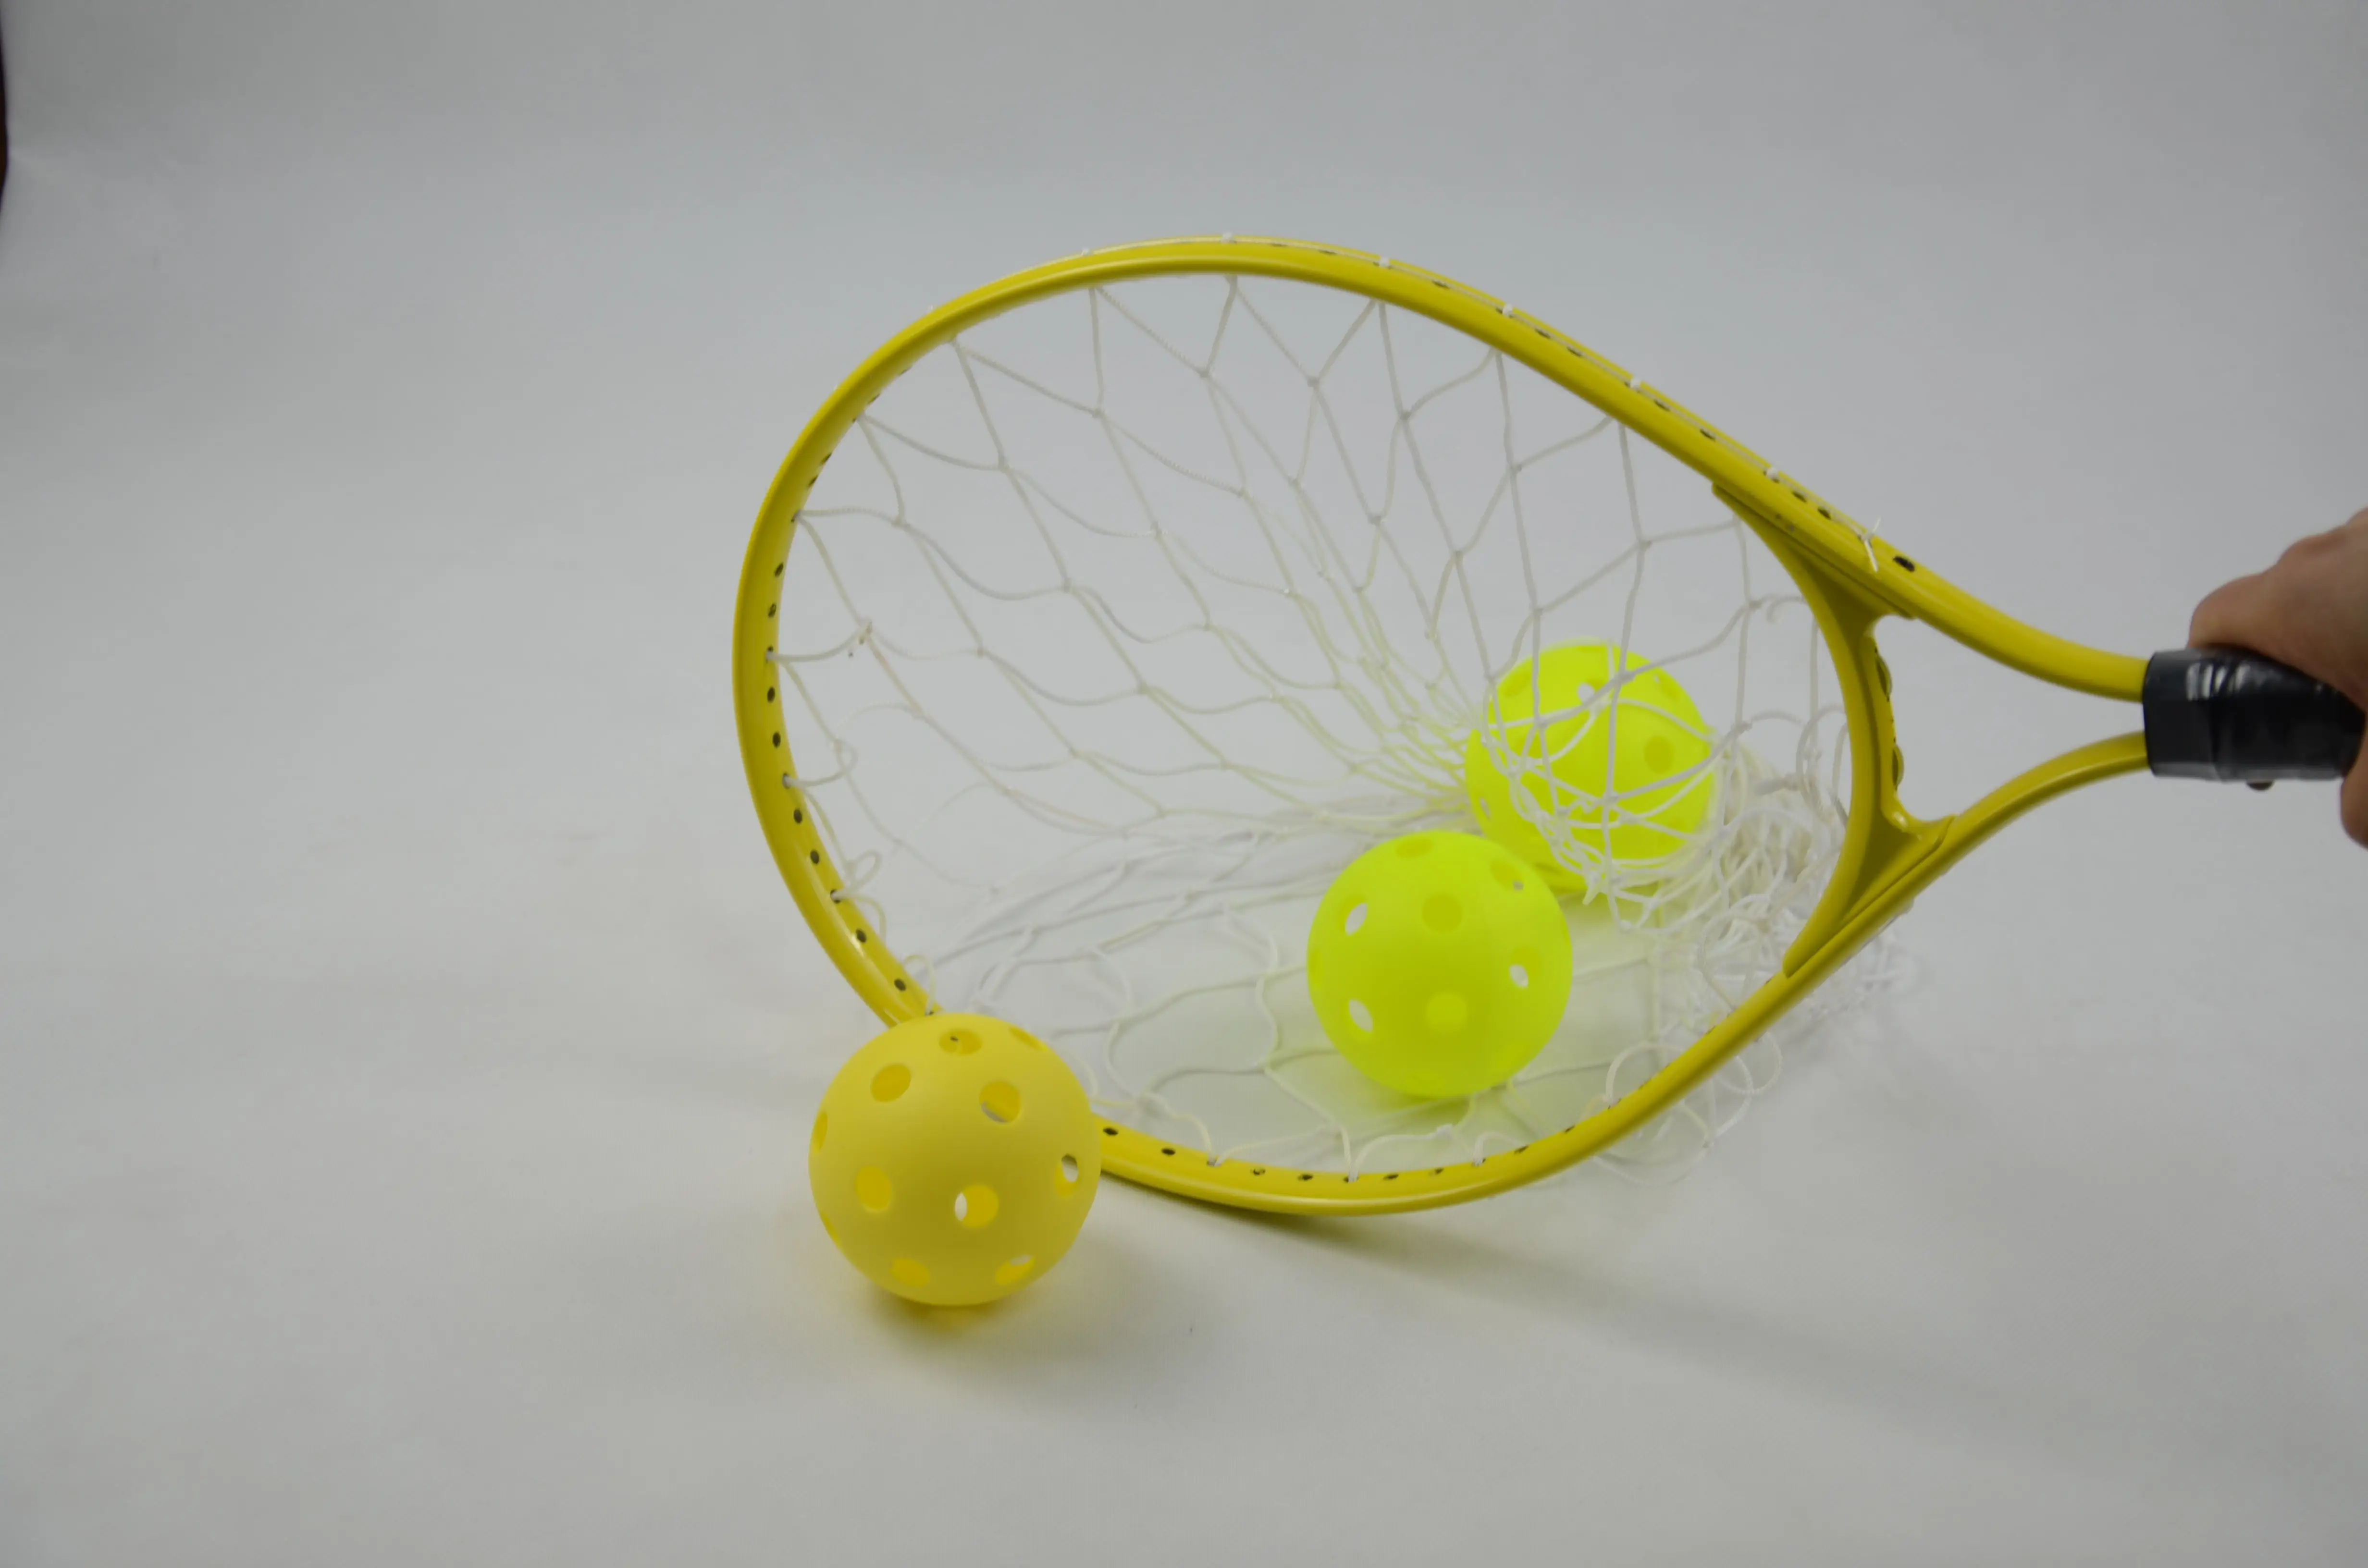 Source Offre Spéciale balle de tennis collecteur pour formation attraper  raquette avec cadre en aluminium et net et noir robinet de bâton on  m.alibaba.com